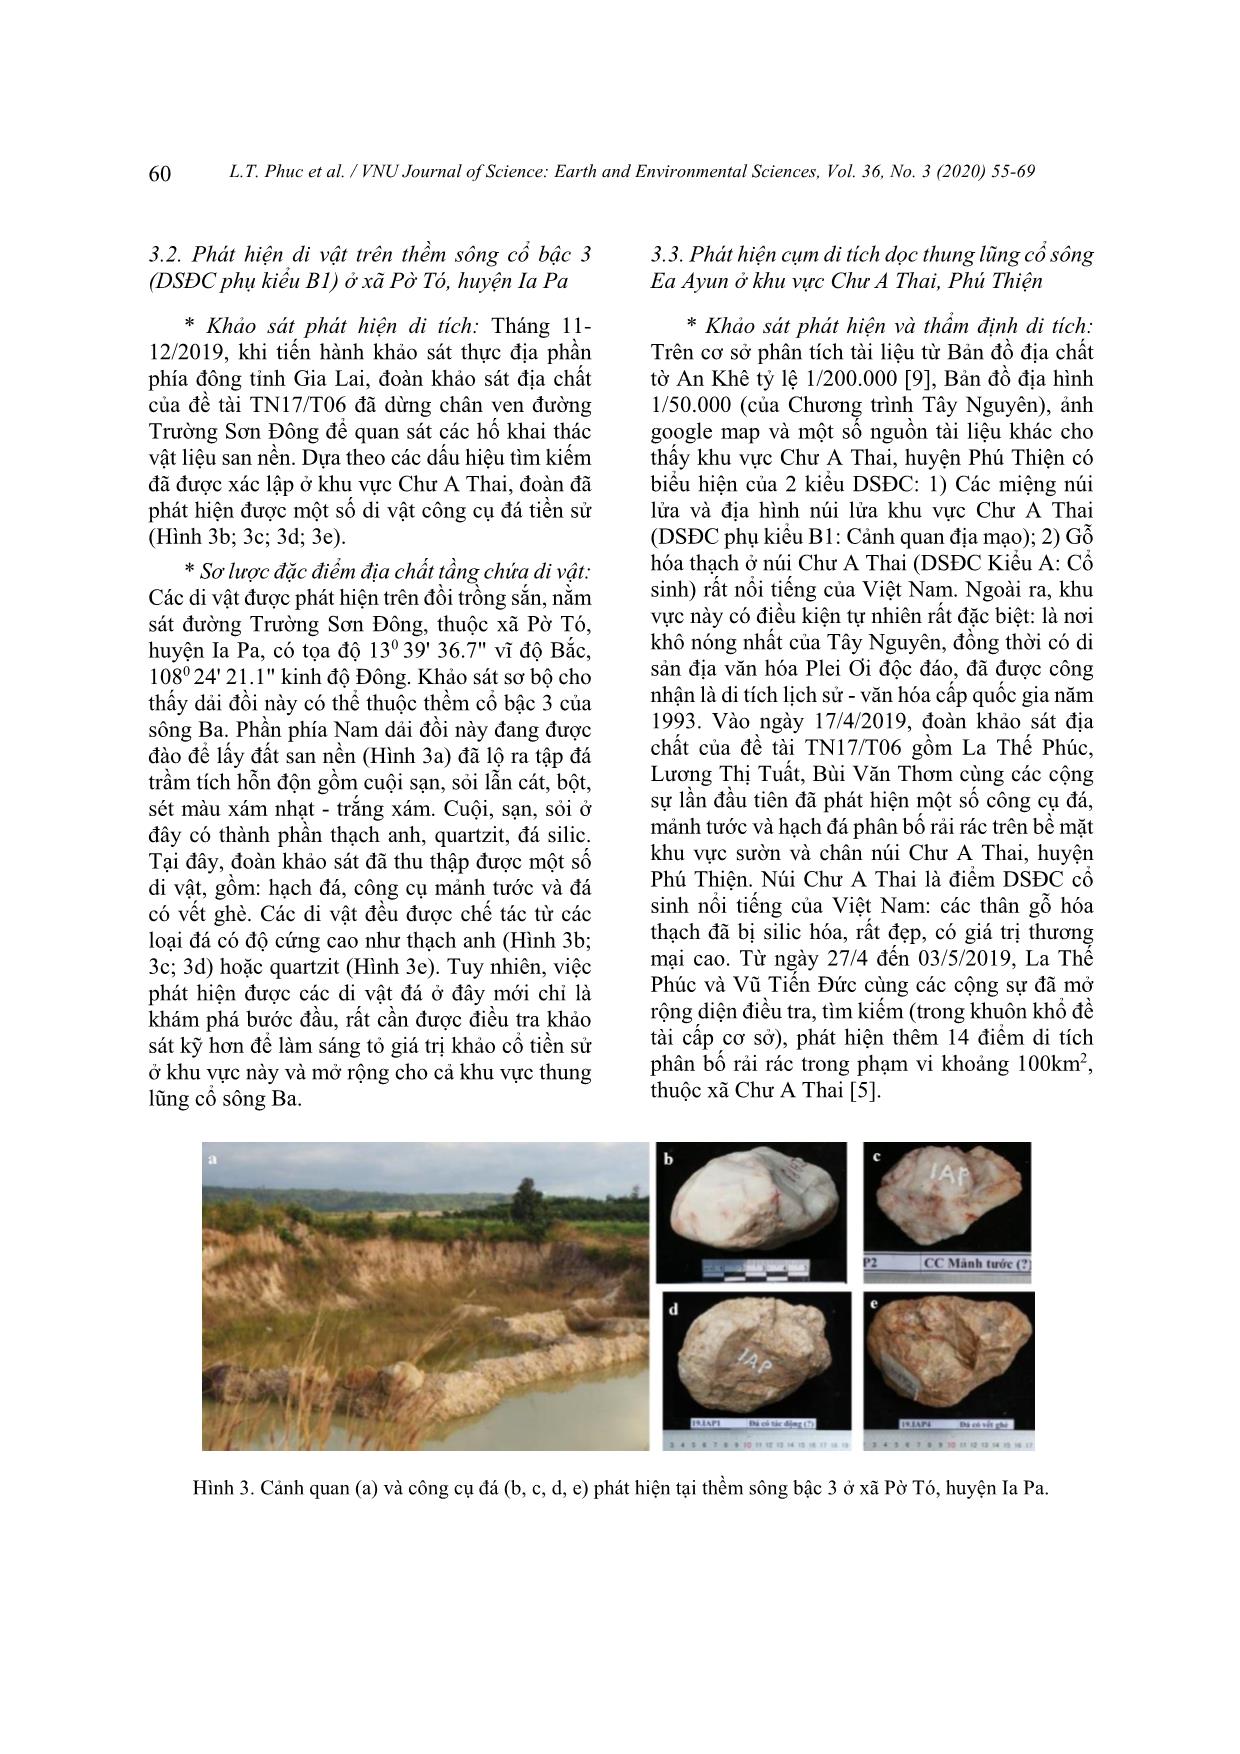 Một số phát hiện mới về di tích khảo cổ trong các thành tạo và di sản địa chất dọc thung lũng cổ sông Ba trang 6